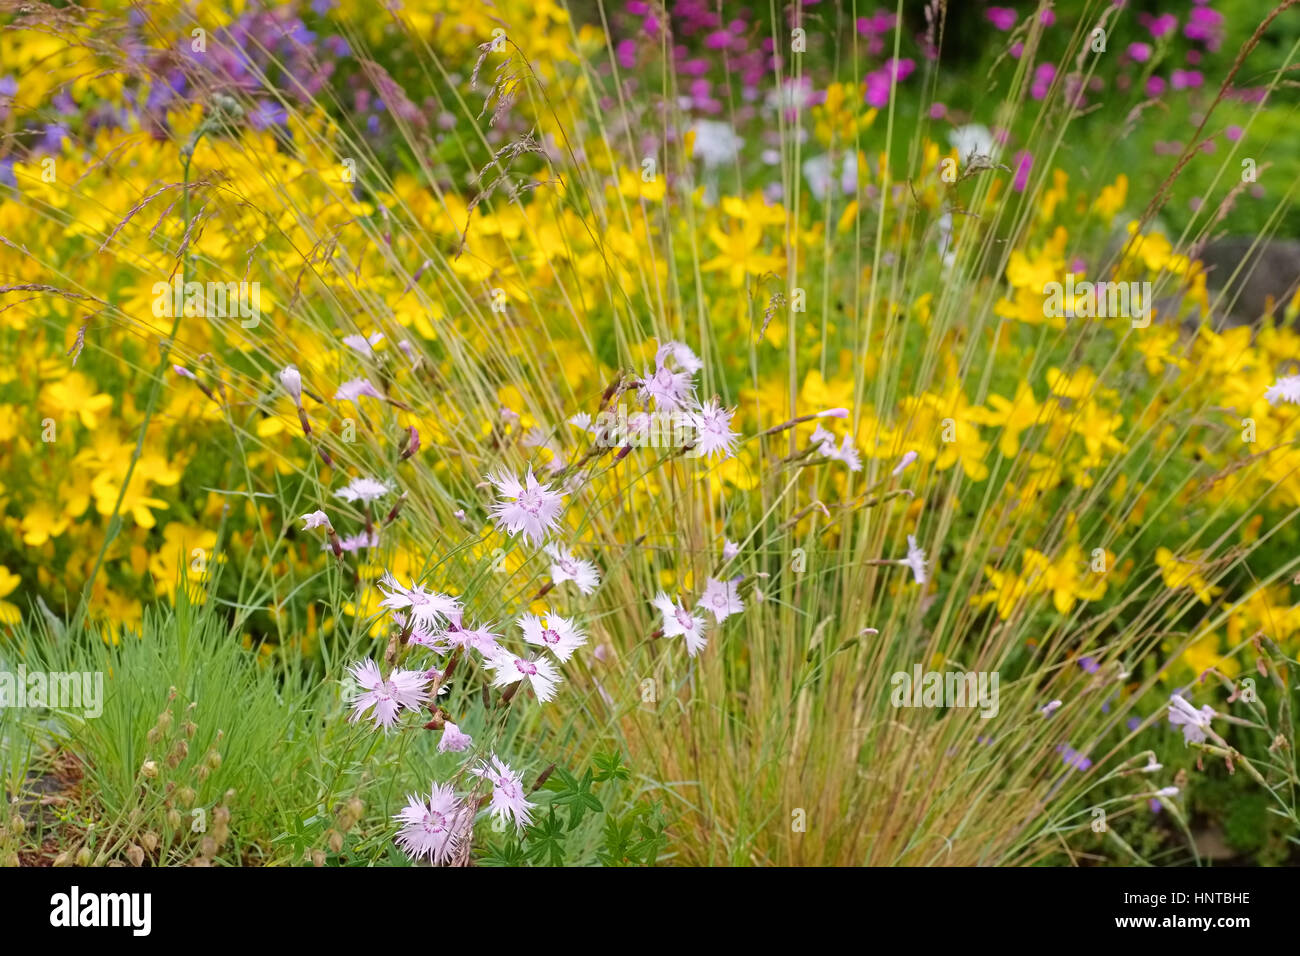 Olymp-Johanniskraut Und Feder-Nelke - Dianthus Plumarius, Hypericum Olympicum und kleine Wildblumen Stockfoto